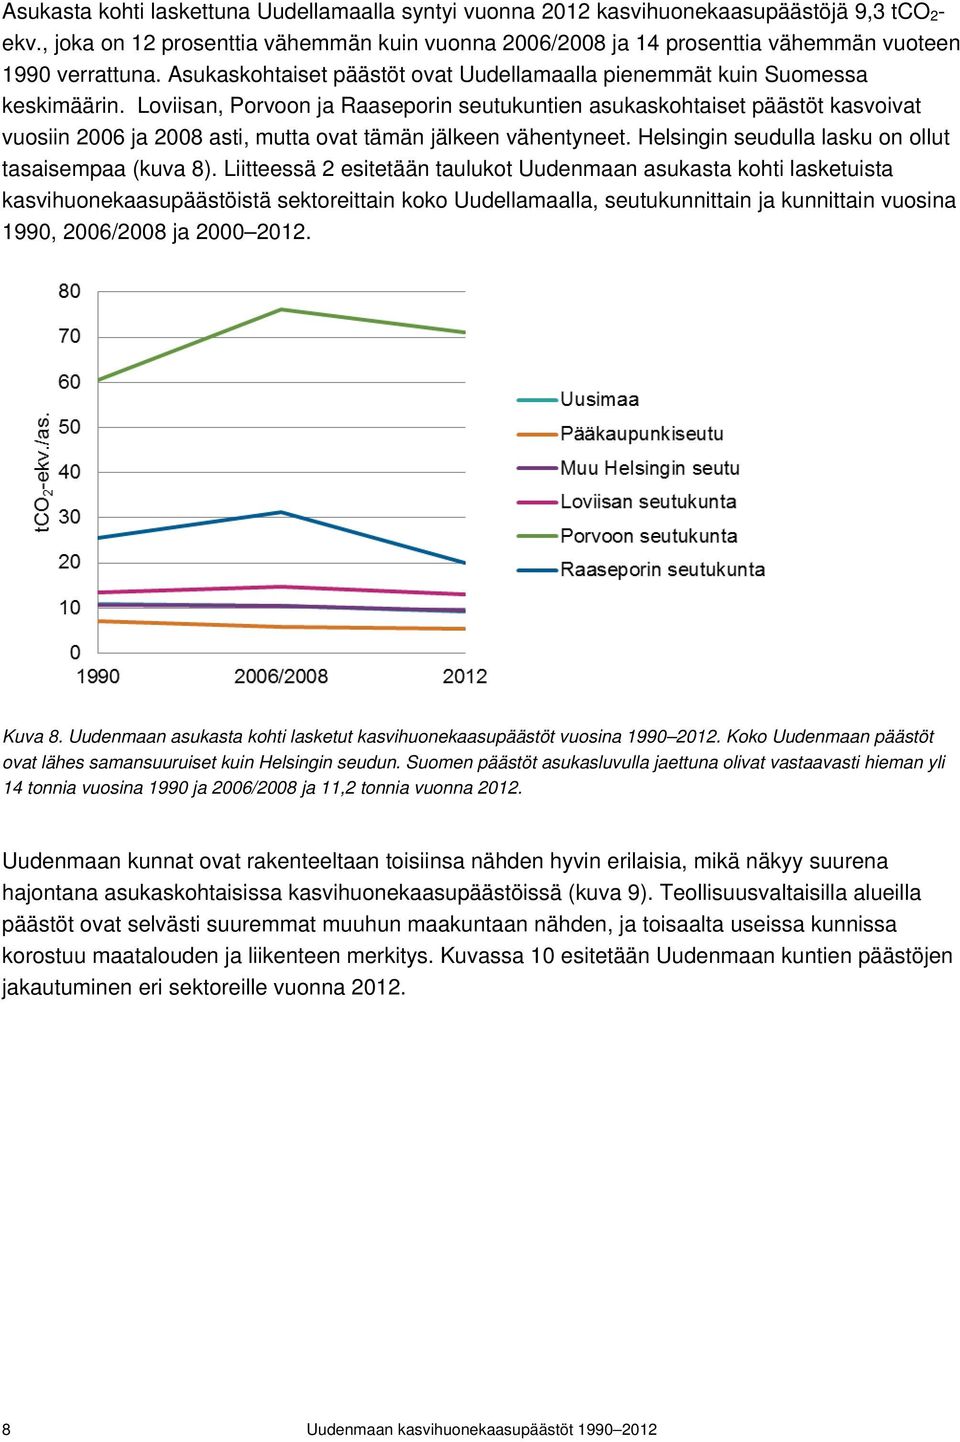 Loviisan, Porvoon ja Raaseporin seutukuntien asukaskohtaiset päästöt kasvoivat vuosiin 2006 ja 2008 asti, mutta ovat tämän jälkeen vähentyneet. Helsingin seudulla lasku on ollut tasaisempaa (kuva 8).